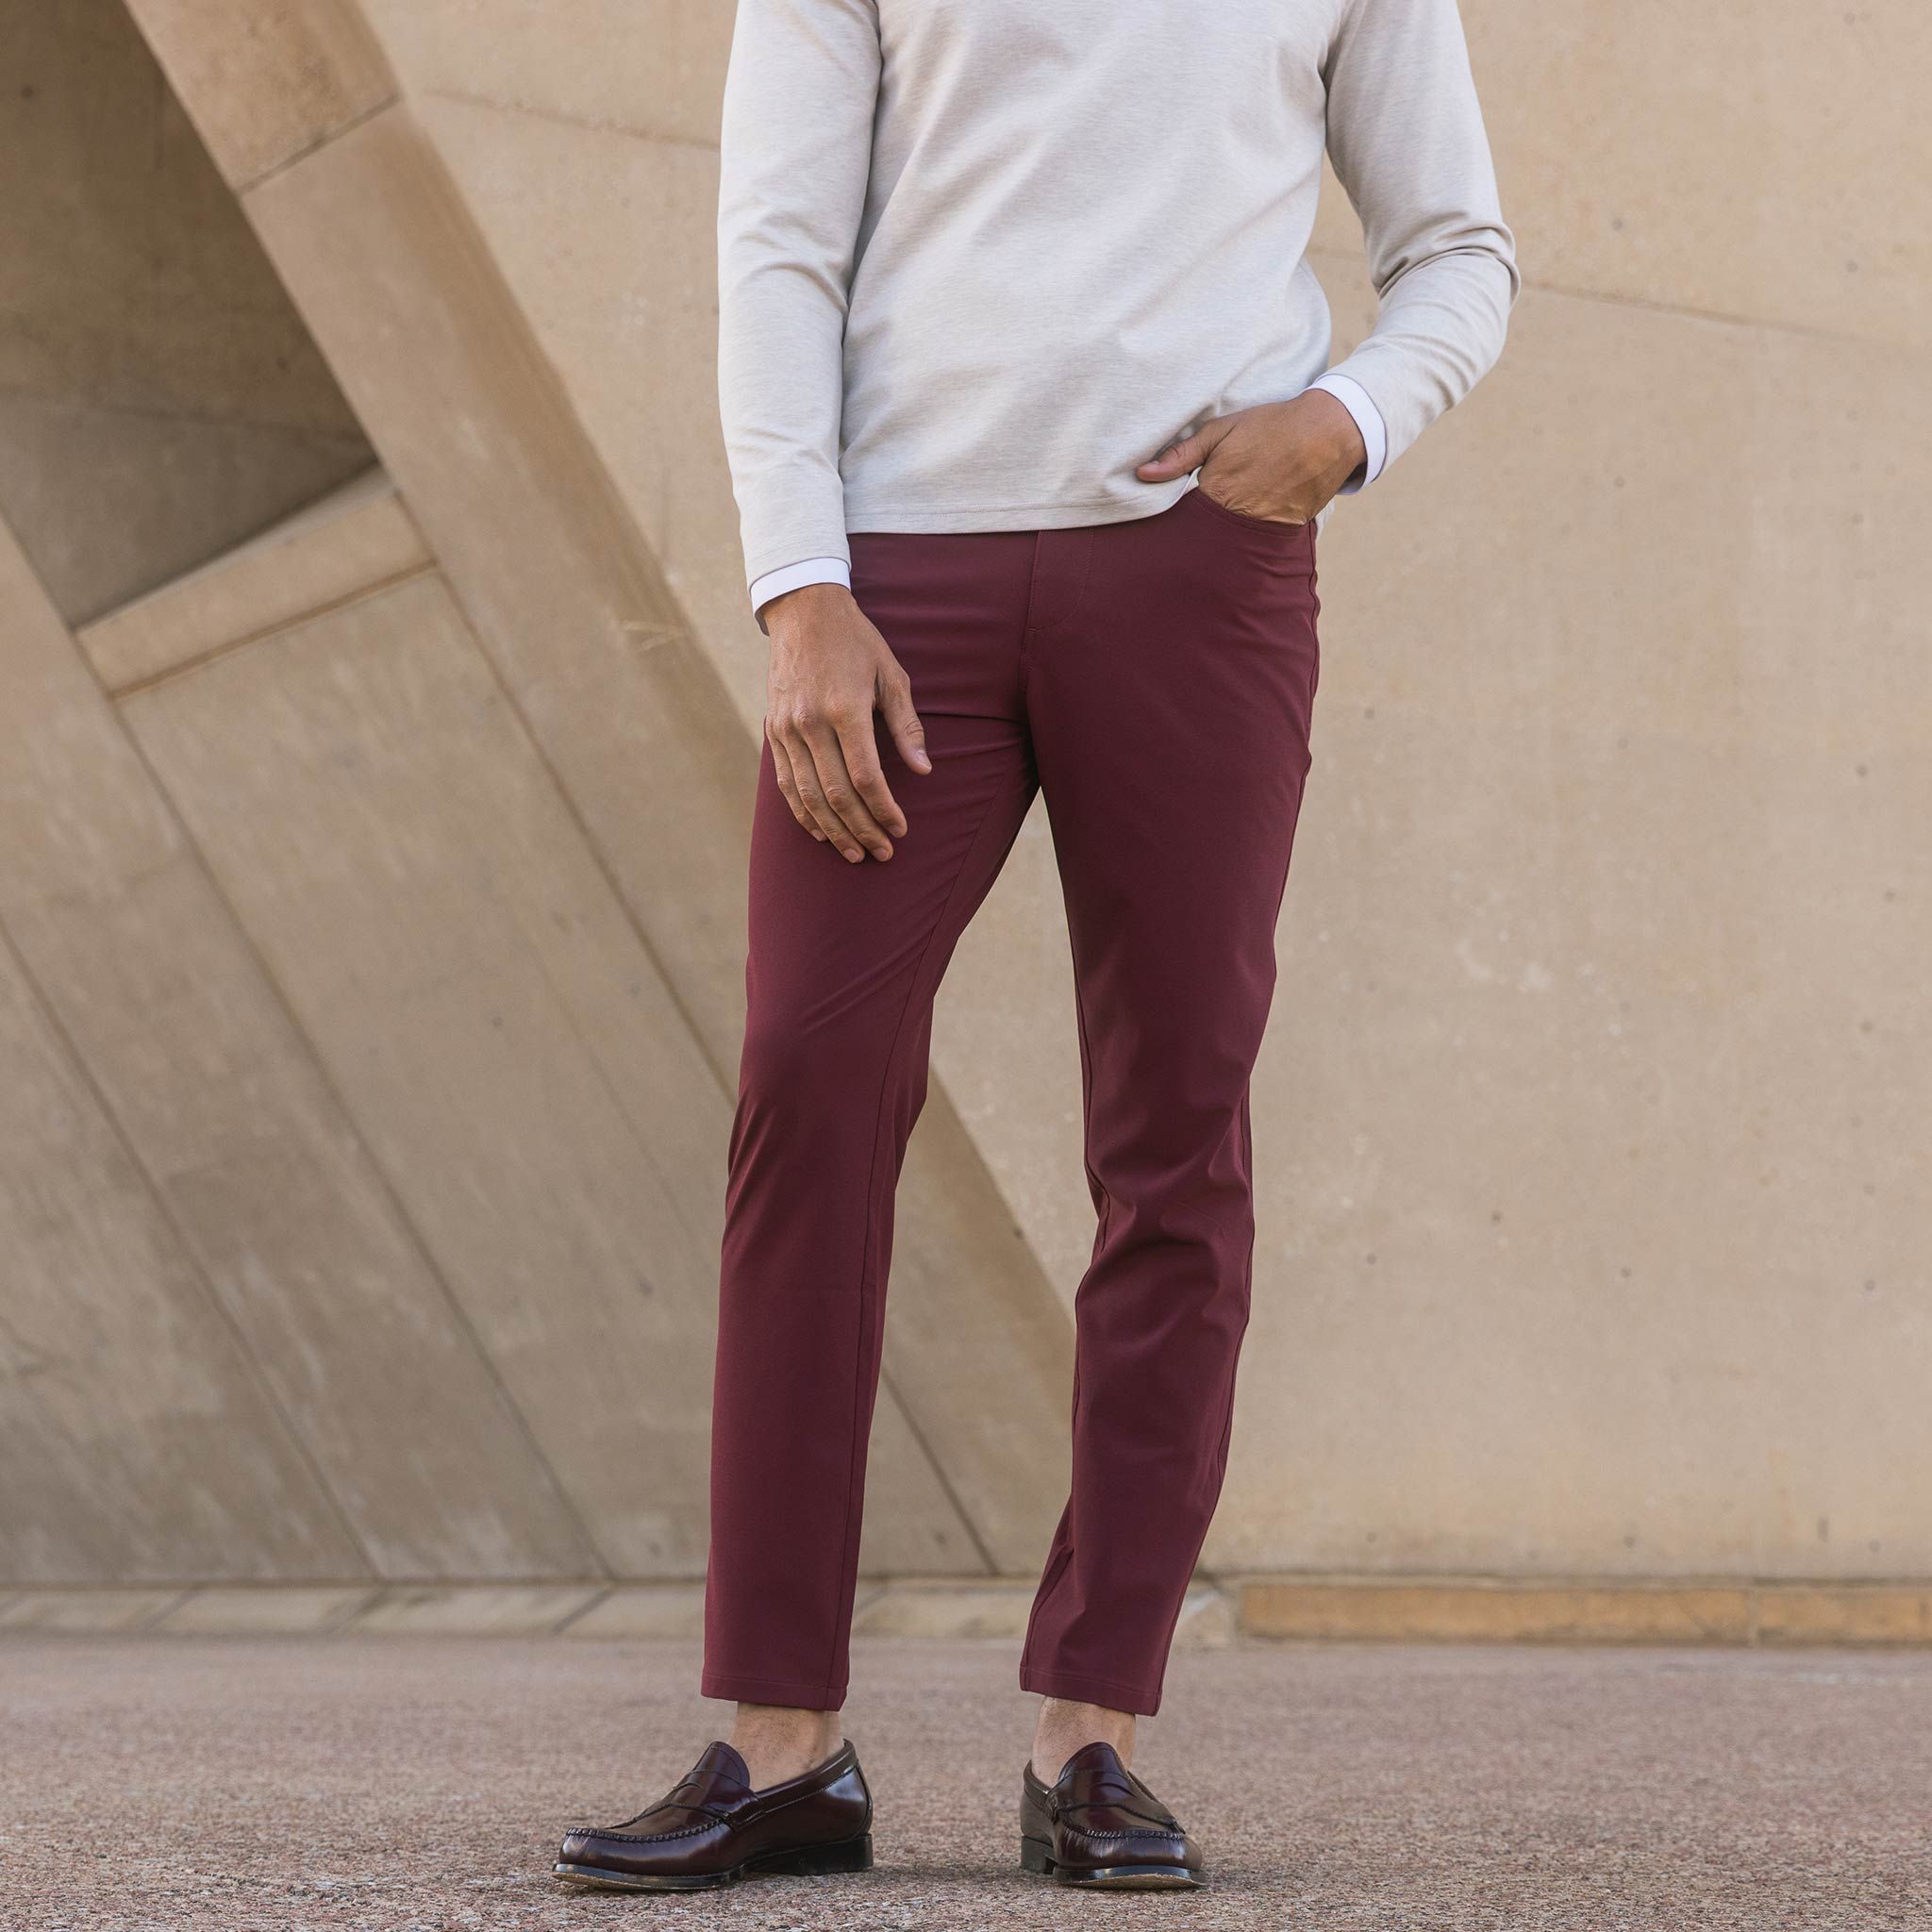 Burgundy pants with white blouse fashion:pants | Fashion, Fashion pants,  Clothes